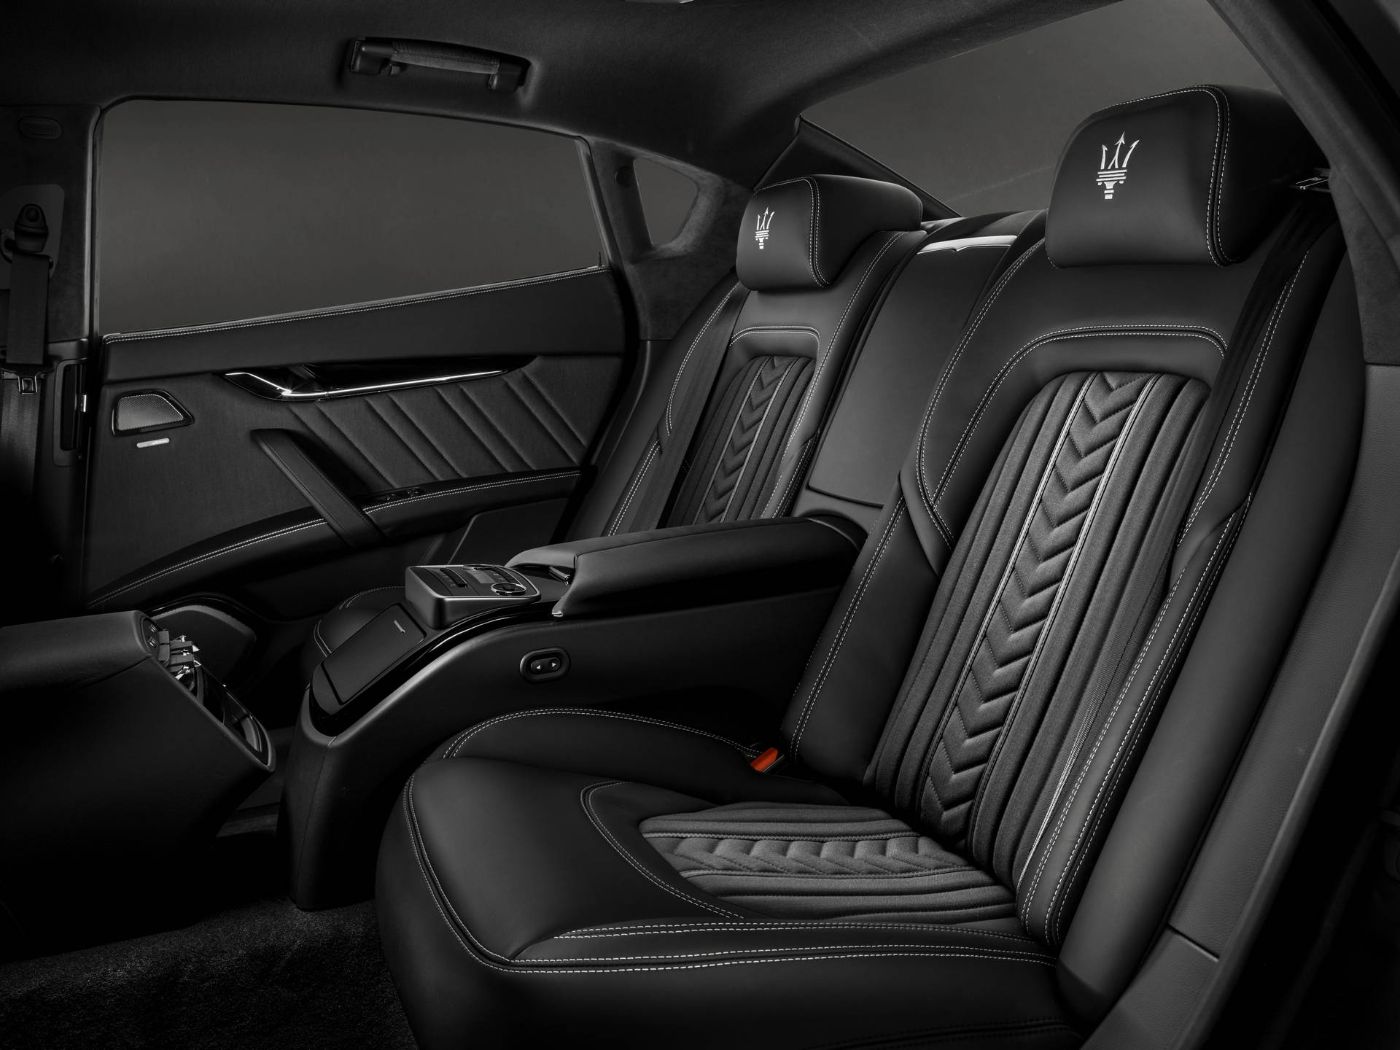 Rear seats design in black leather by Ermenegildo Zegna - Maserati Quattroporte GranLusso